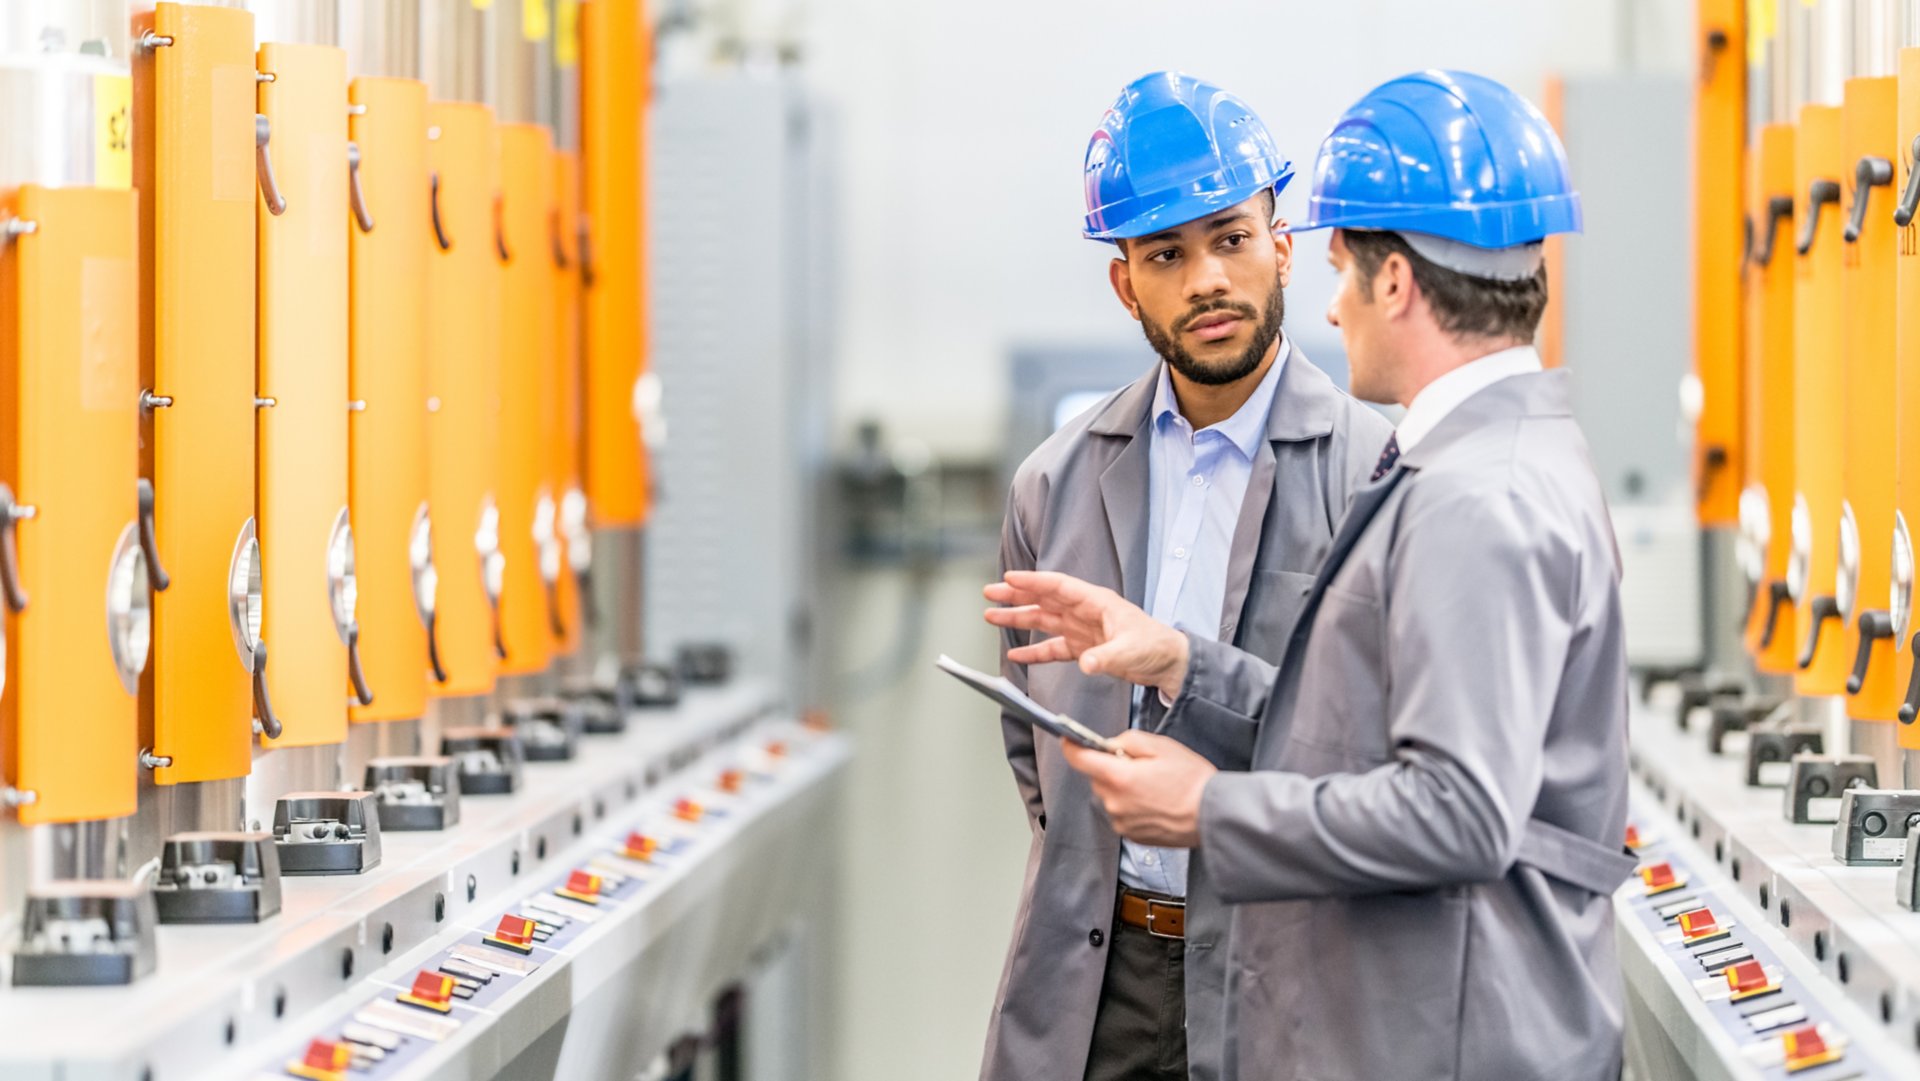 Dois engenheiros conversando ao lado de algumas máquinas em uma fábrica.